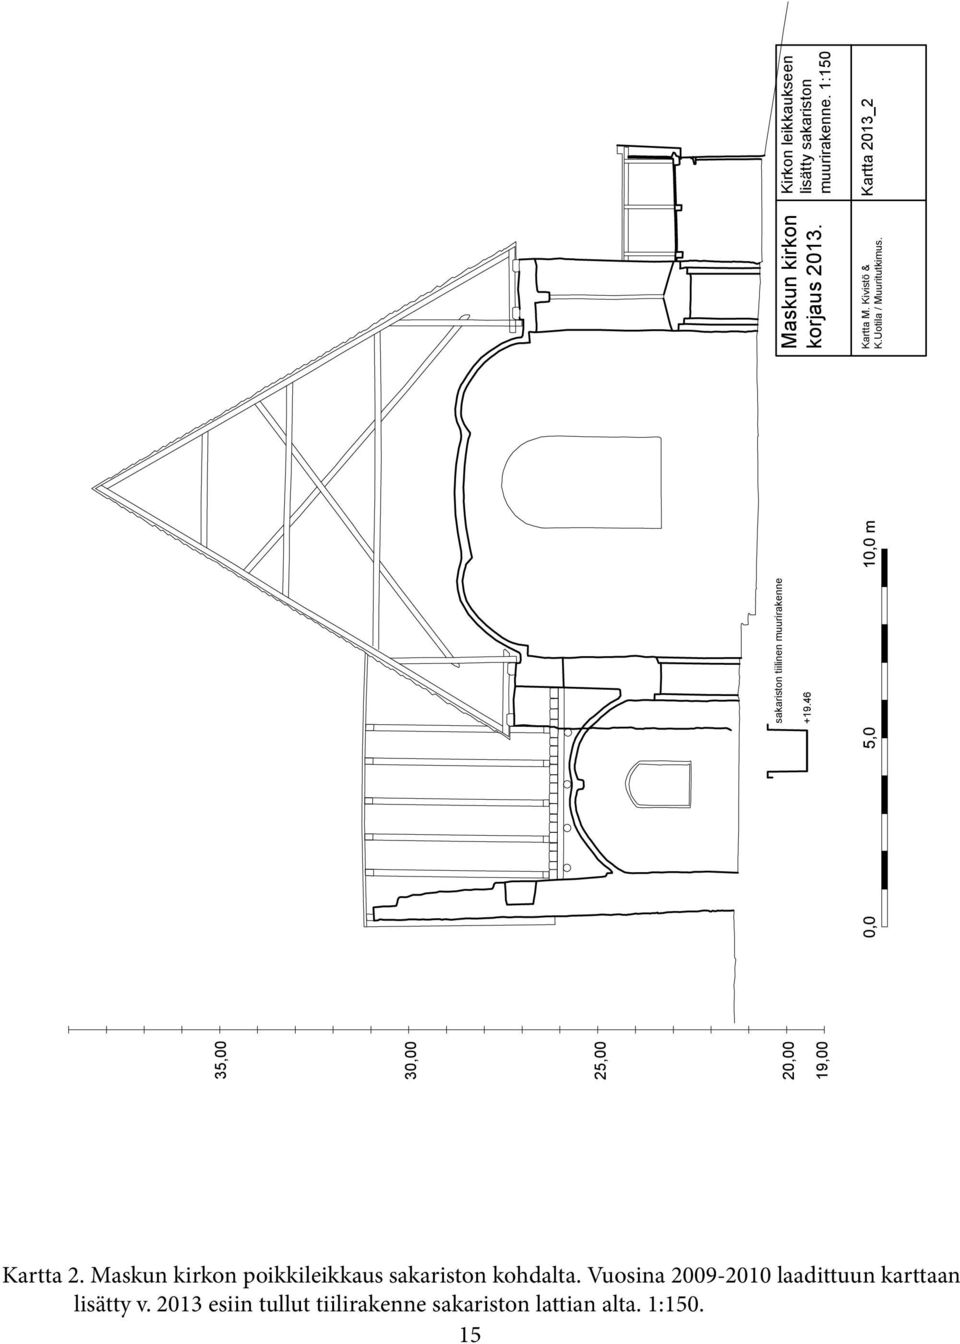 1:150 Kartta 2013_2 Kartta 2. Maskun kirkon poikkileikkaus sakariston kohdalta.